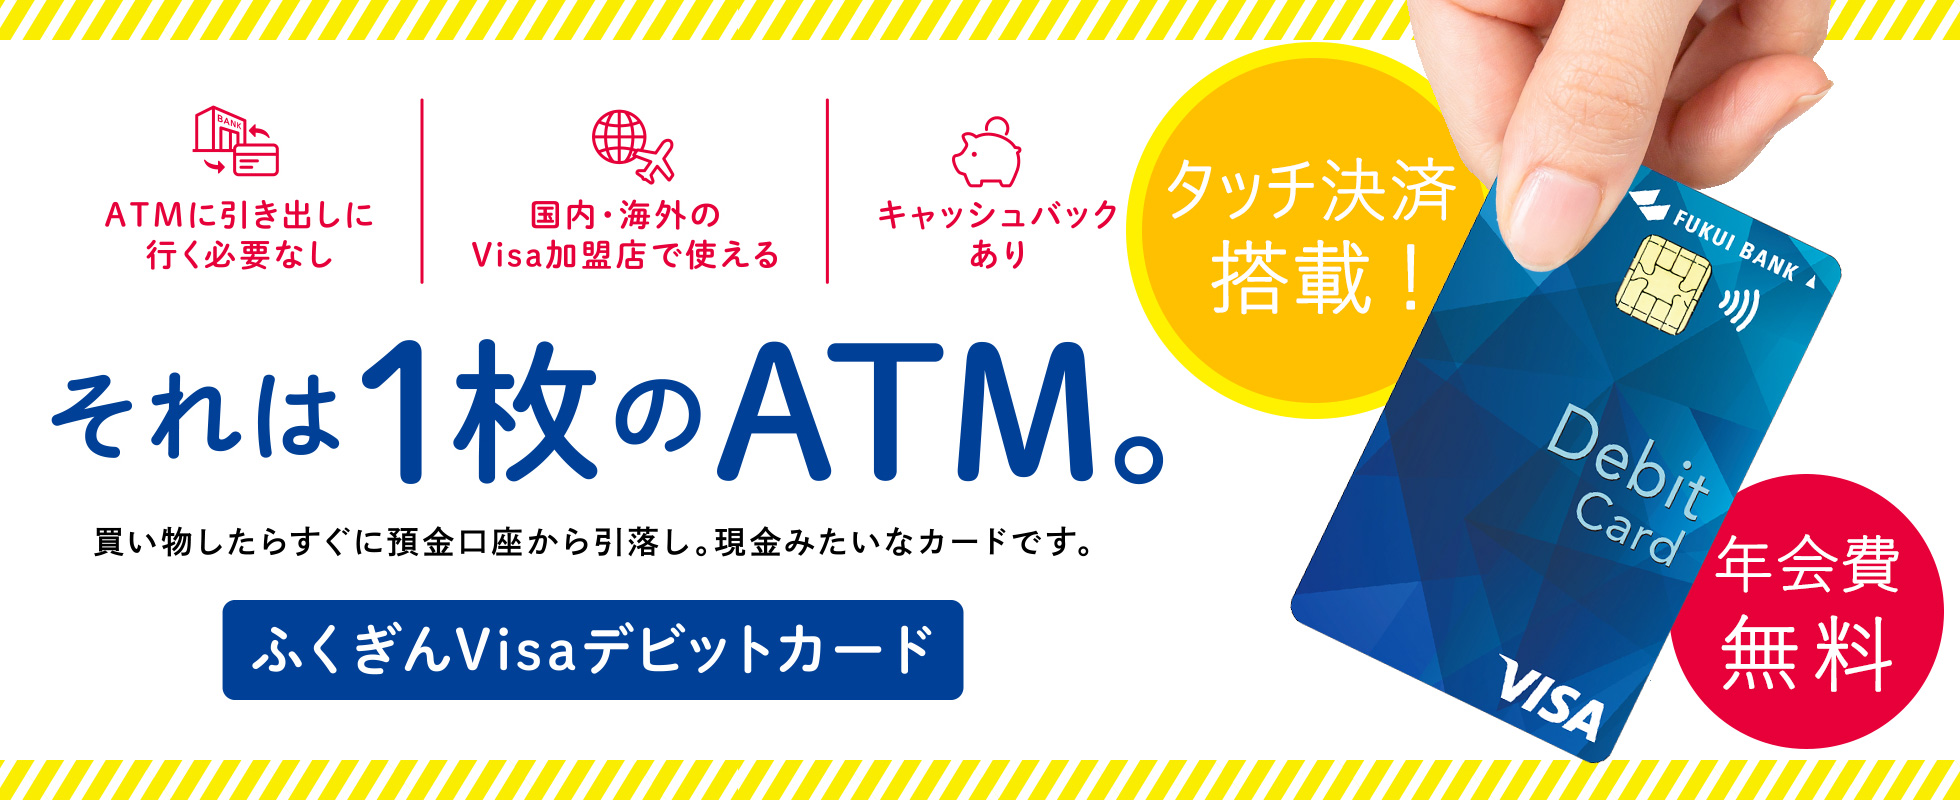 銀行 atm 福井 福井県の北陸銀行店舗・ATM一覧